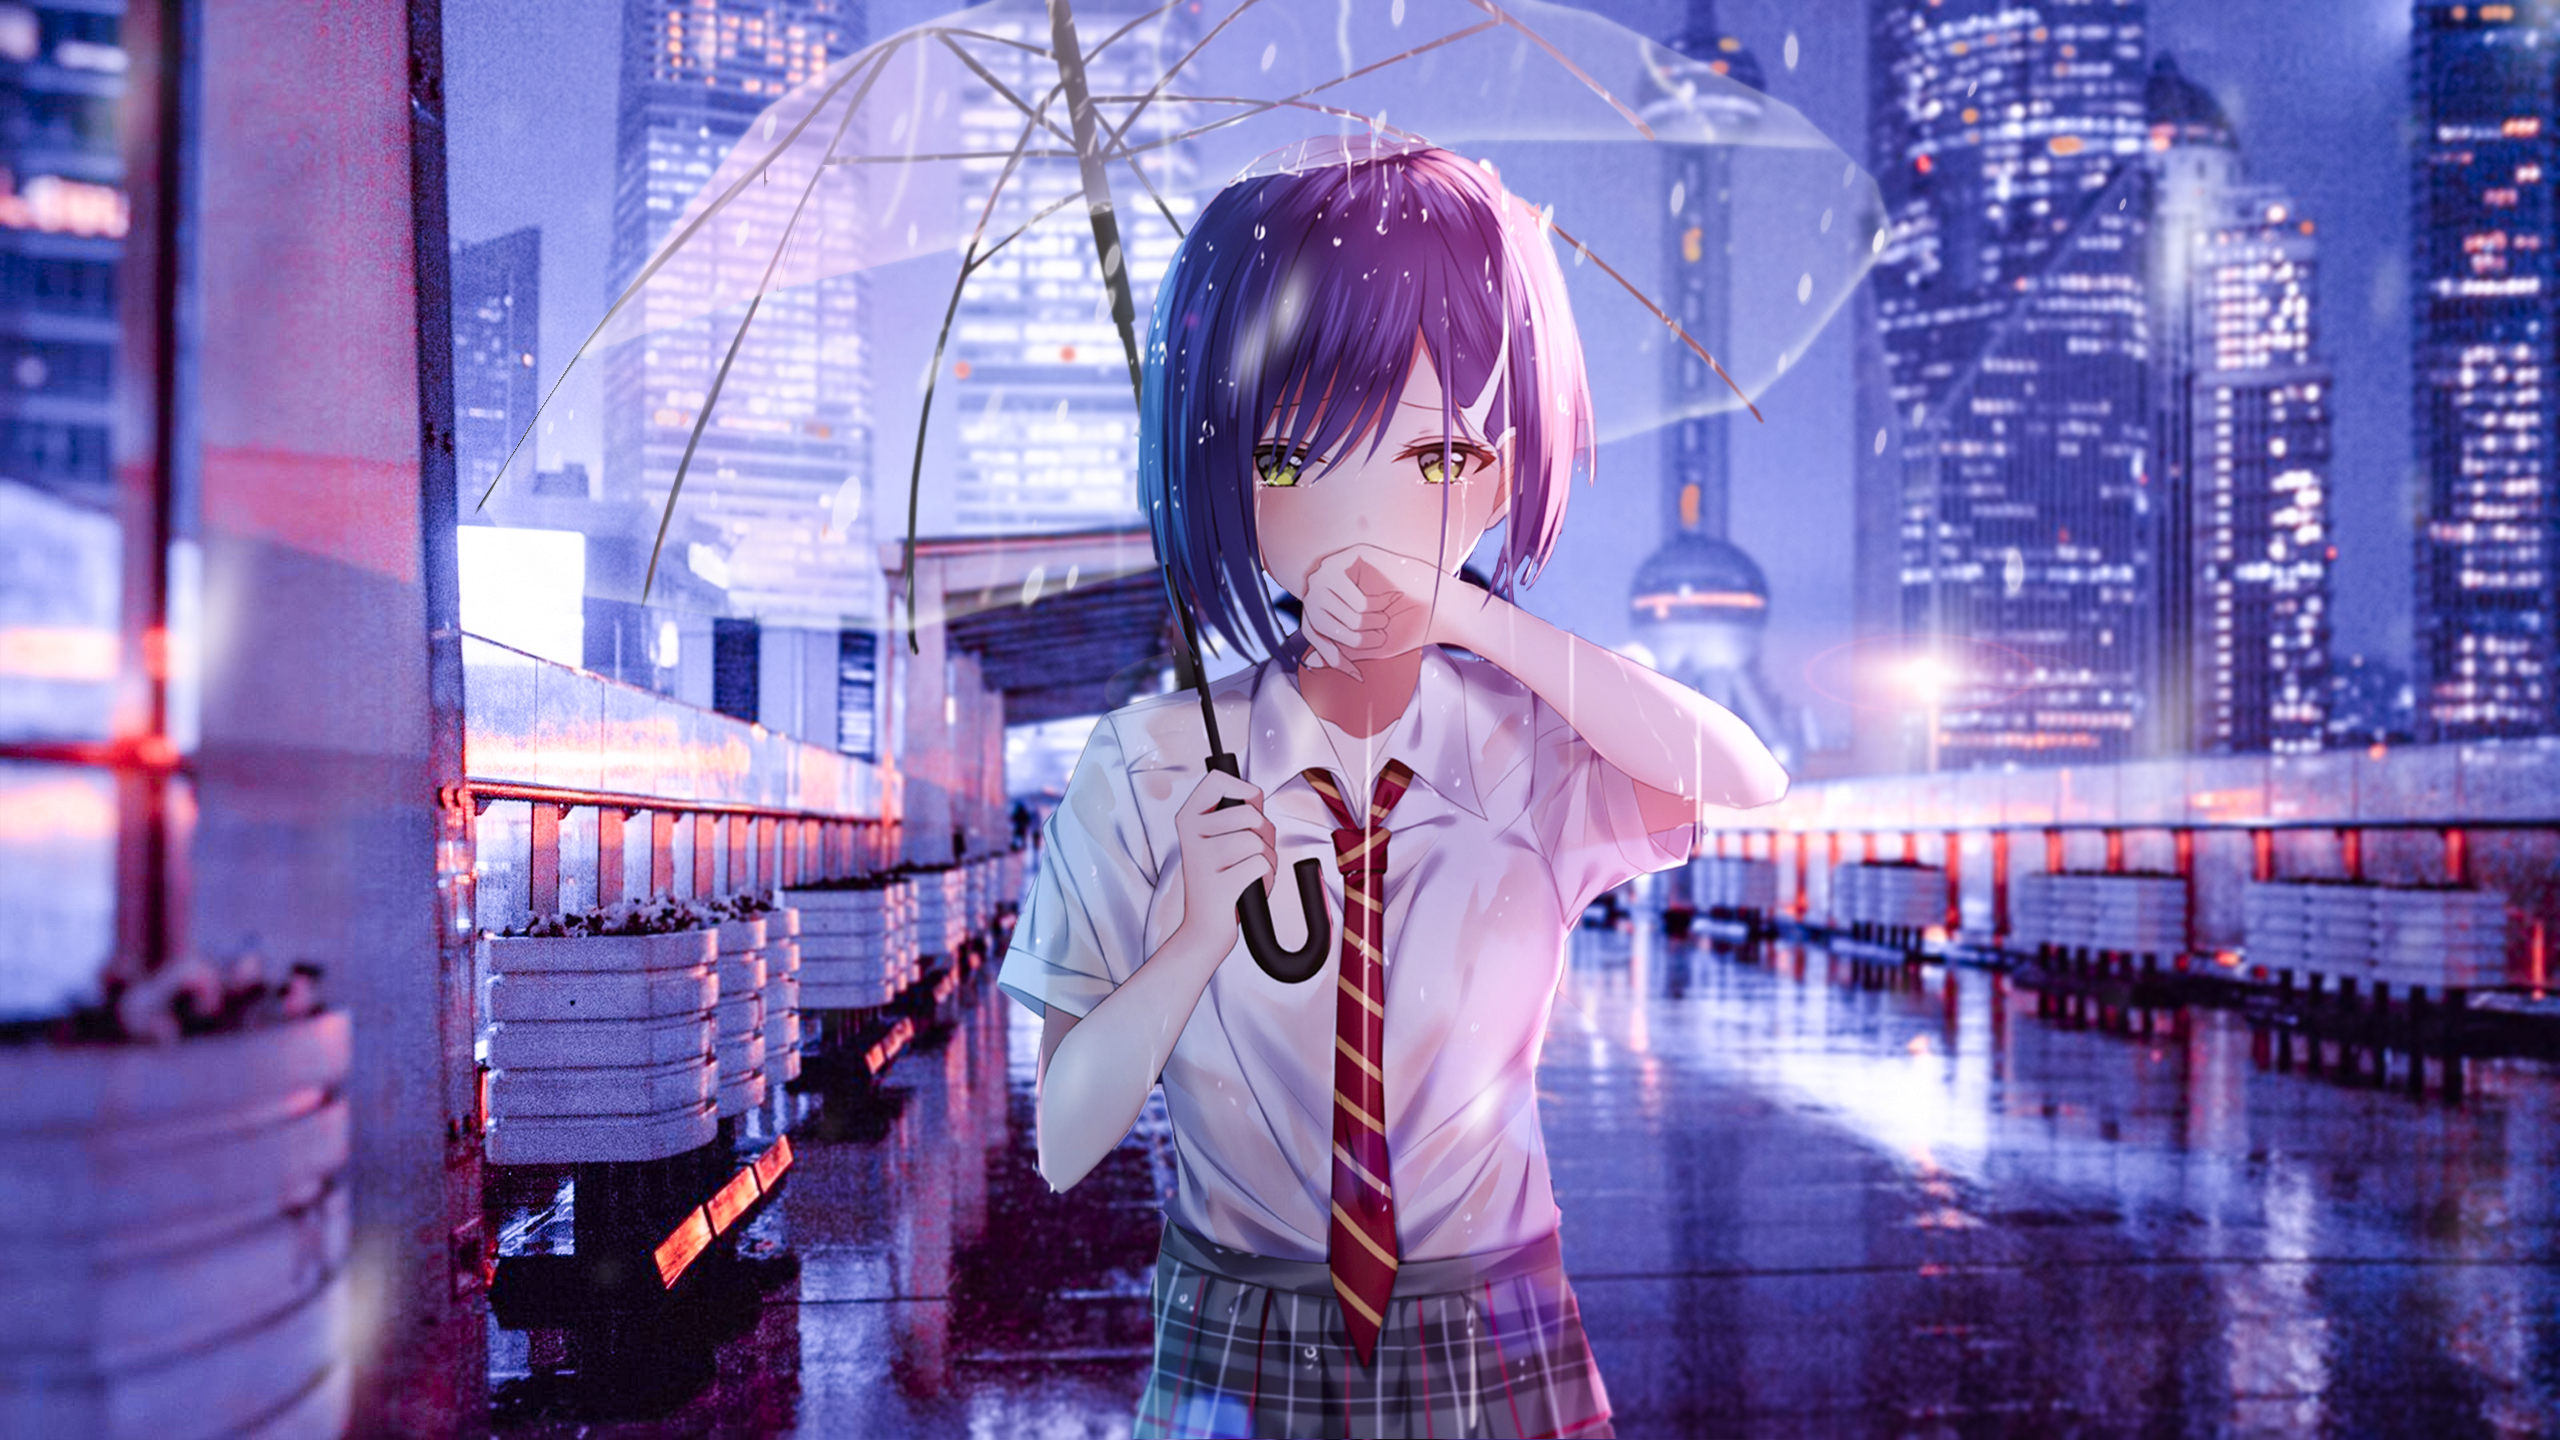 Raining Girl Anime Wallpaper